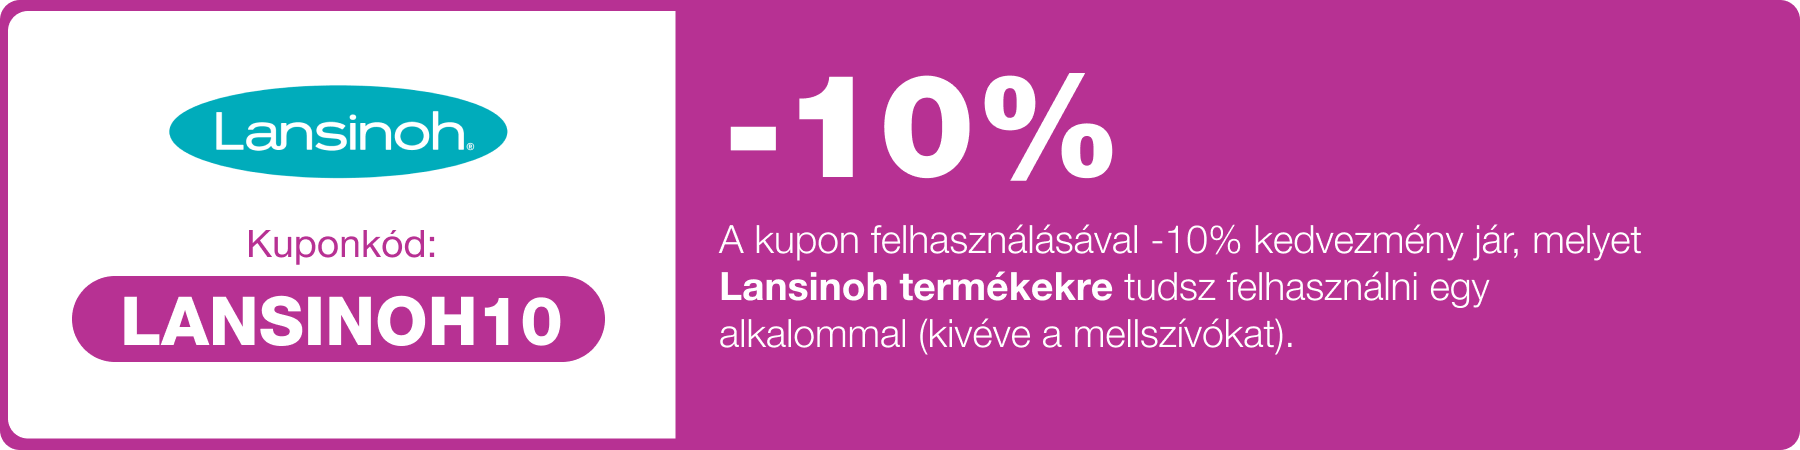 -10% kedvezmény, melyet a Lansinoh termékekre tudsz felhasználni. (kivéve mellszívók)